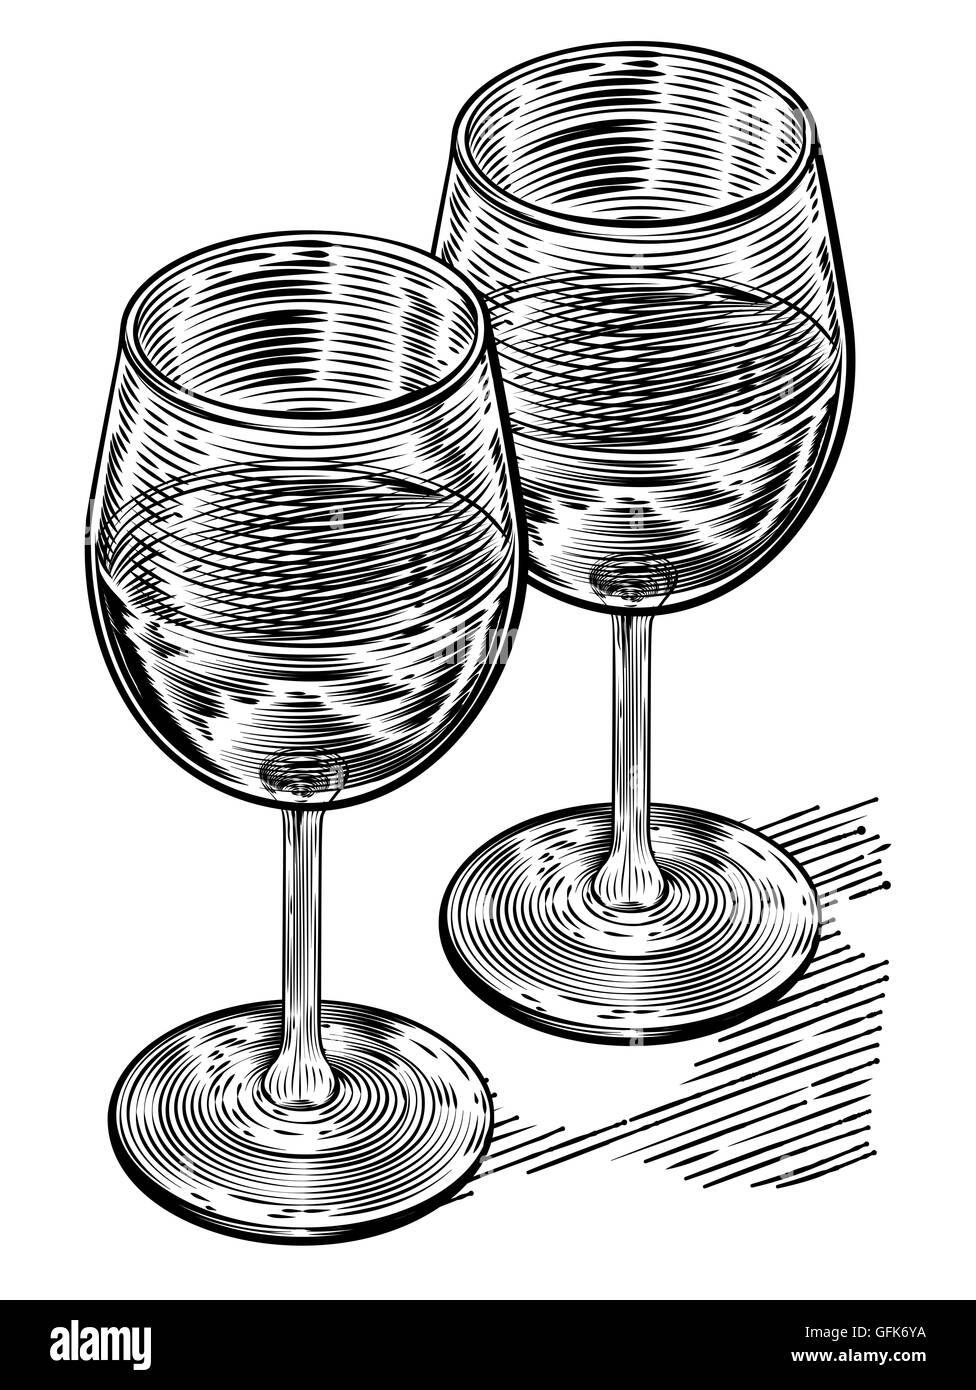 Illustration originale d'une paire de verres de vin dans un style sur bois vinatge Banque D'Images